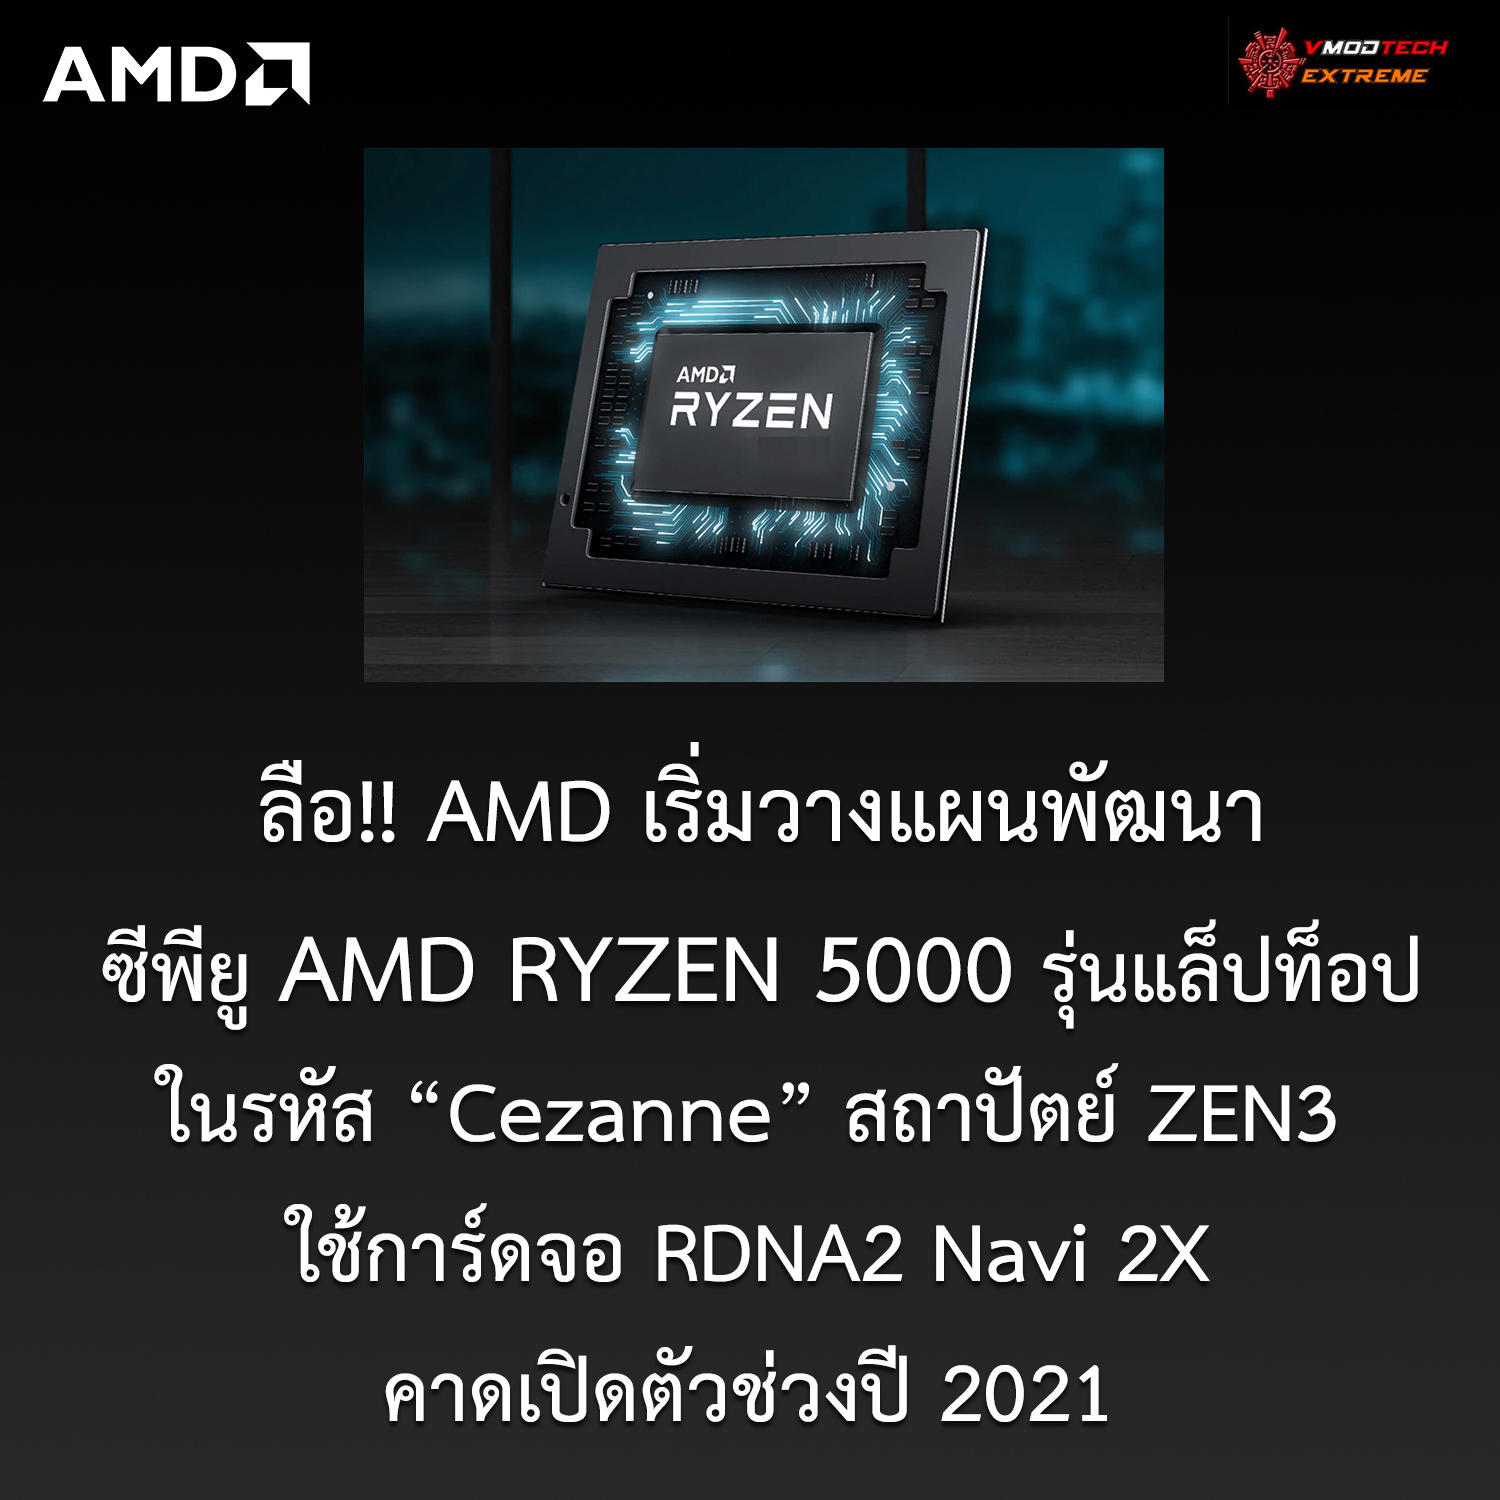 amd ryzen 5000 ลือ!! AMD เริ่มวางแผนพัฒนาซีพียู AMD RYZEN 5000 รุ่นแล็ปท็อปในรหัส Cezanne สถาปัตย์ ZEN3 ใช้การ์ดจอ RDNA2 Navi 2X คาดเปิดตัวช่วงปี 2021 